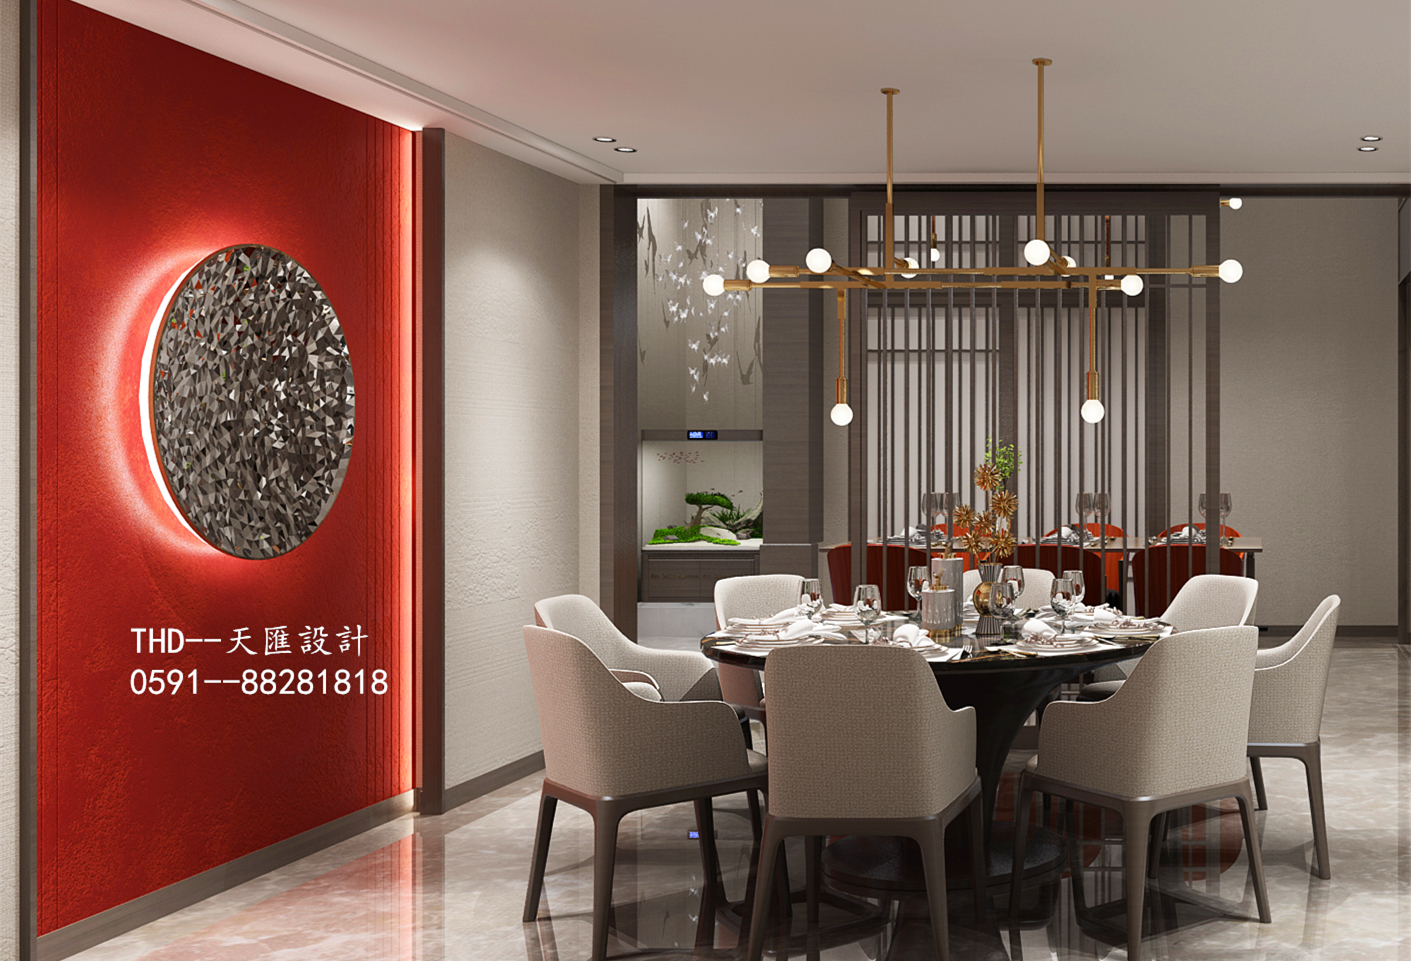 简约 80后 新中式 客厅 中国红 复式 楼梯 别墅 游小华 餐厅图片来自福建天汇设计工程有限公司在新中式风格《懿》的分享